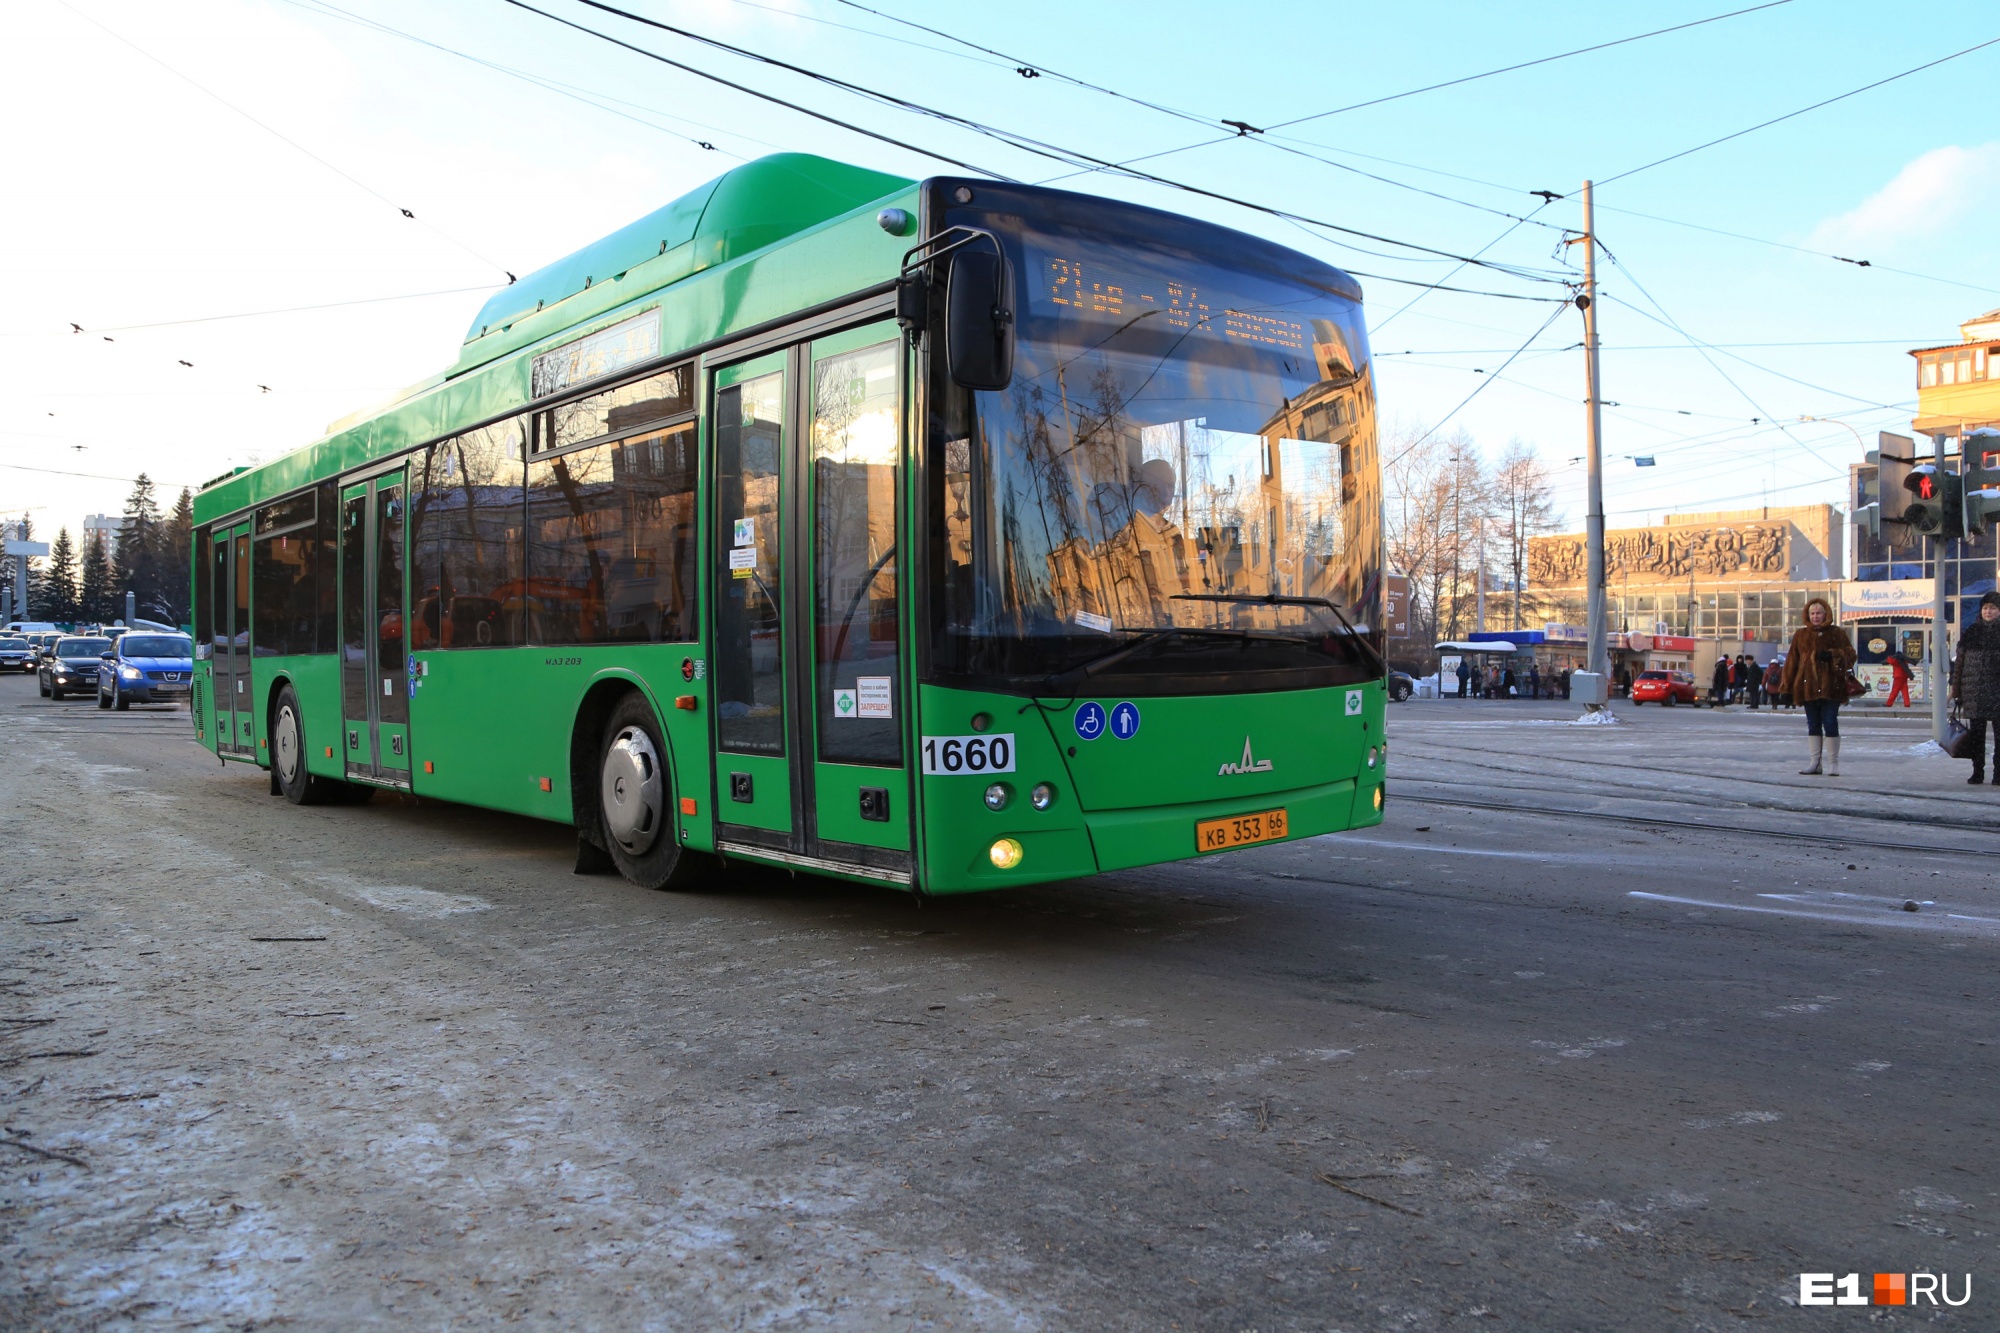 Екатеринбург покупает новые автобусы с валидаторами и камерами наблюдения